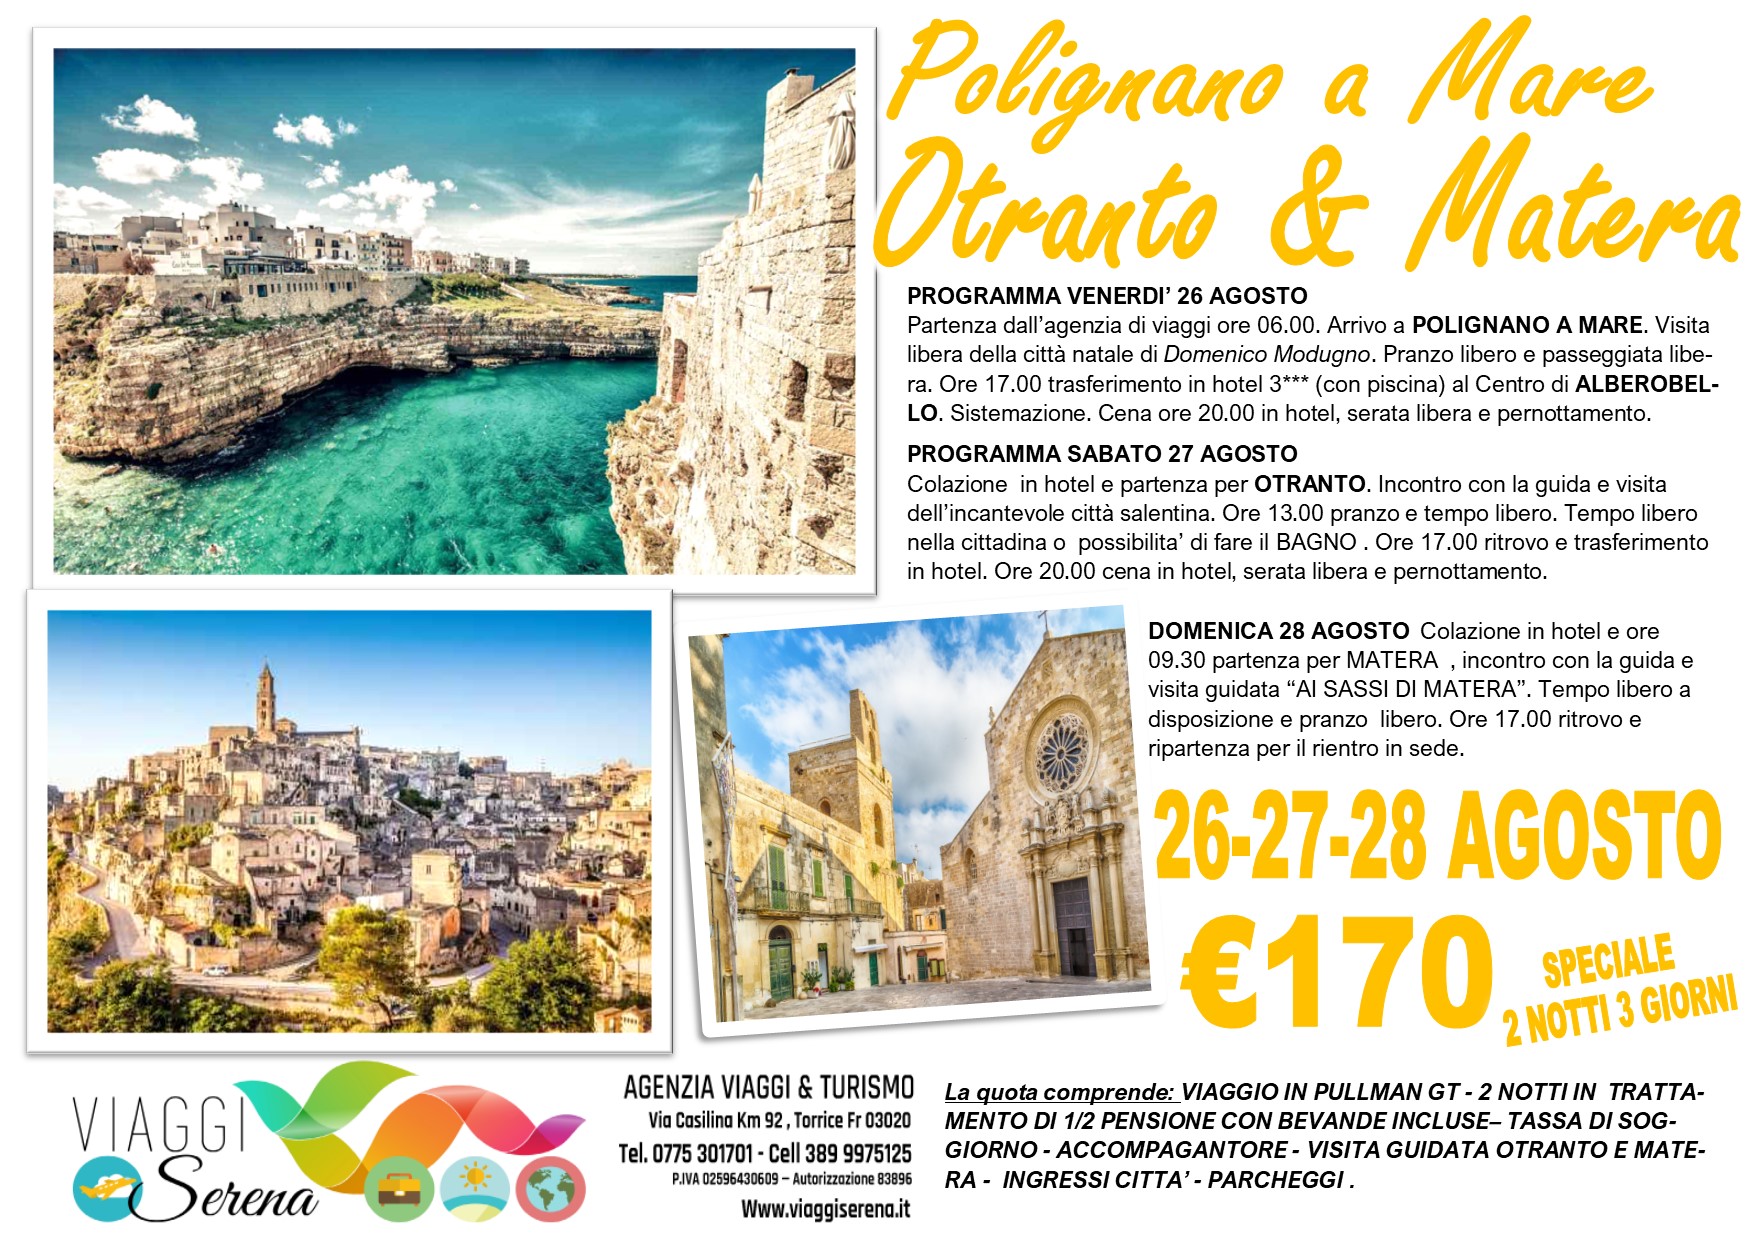 Viaggi di Gruppo: Puglia “Polignano a Mare, Otranto e Matera” 26-27-28 Agosto €170,00